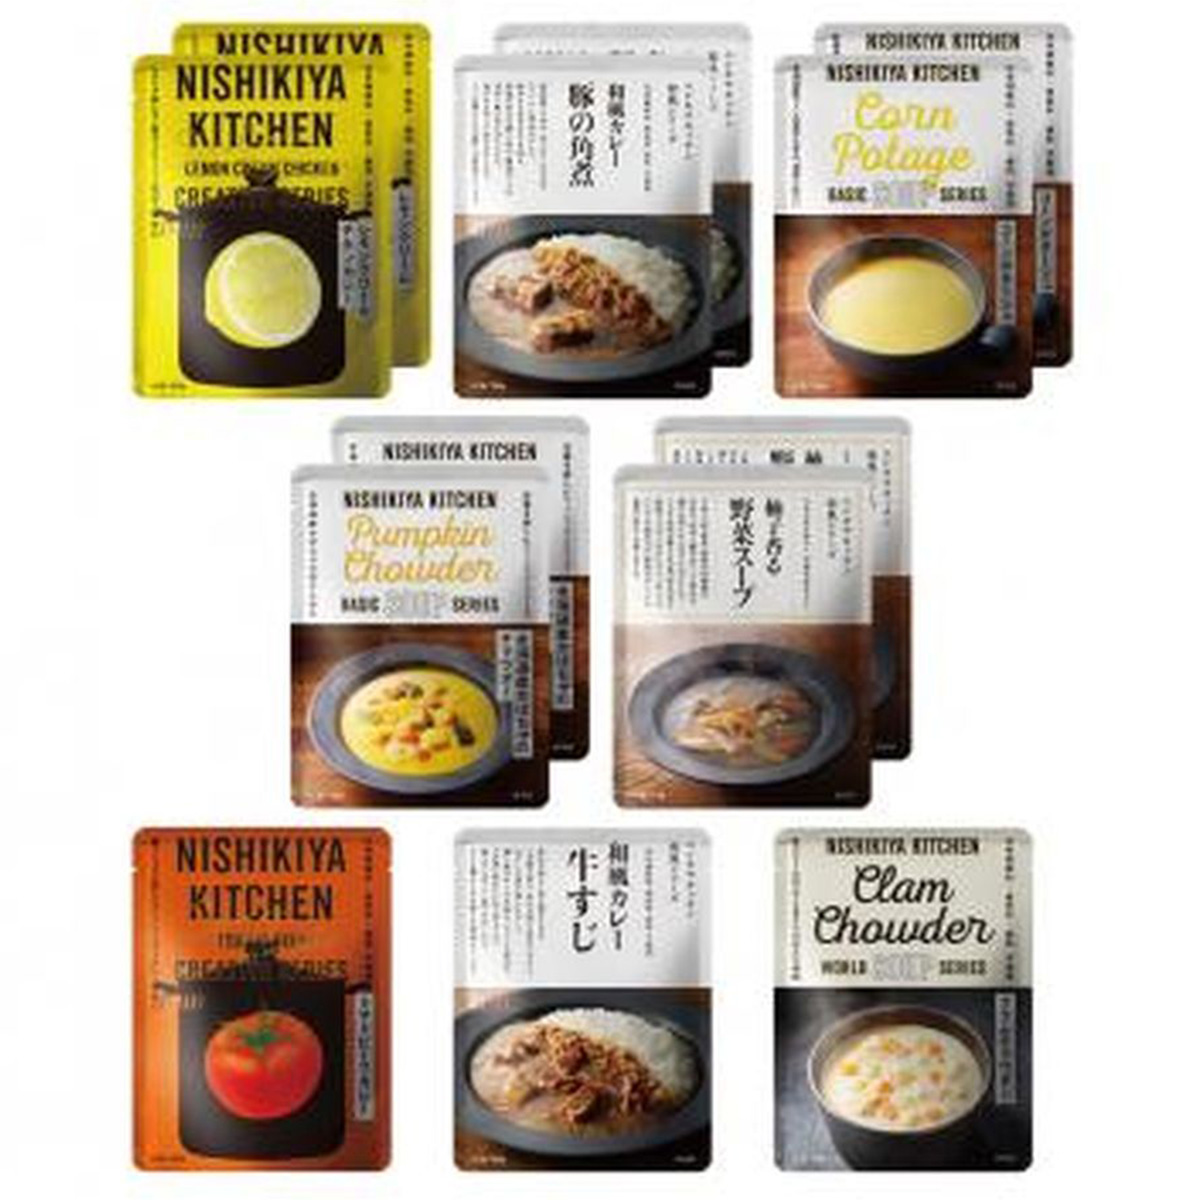 NISHIKIYA KITCHENカレースープ(8種)13食セット